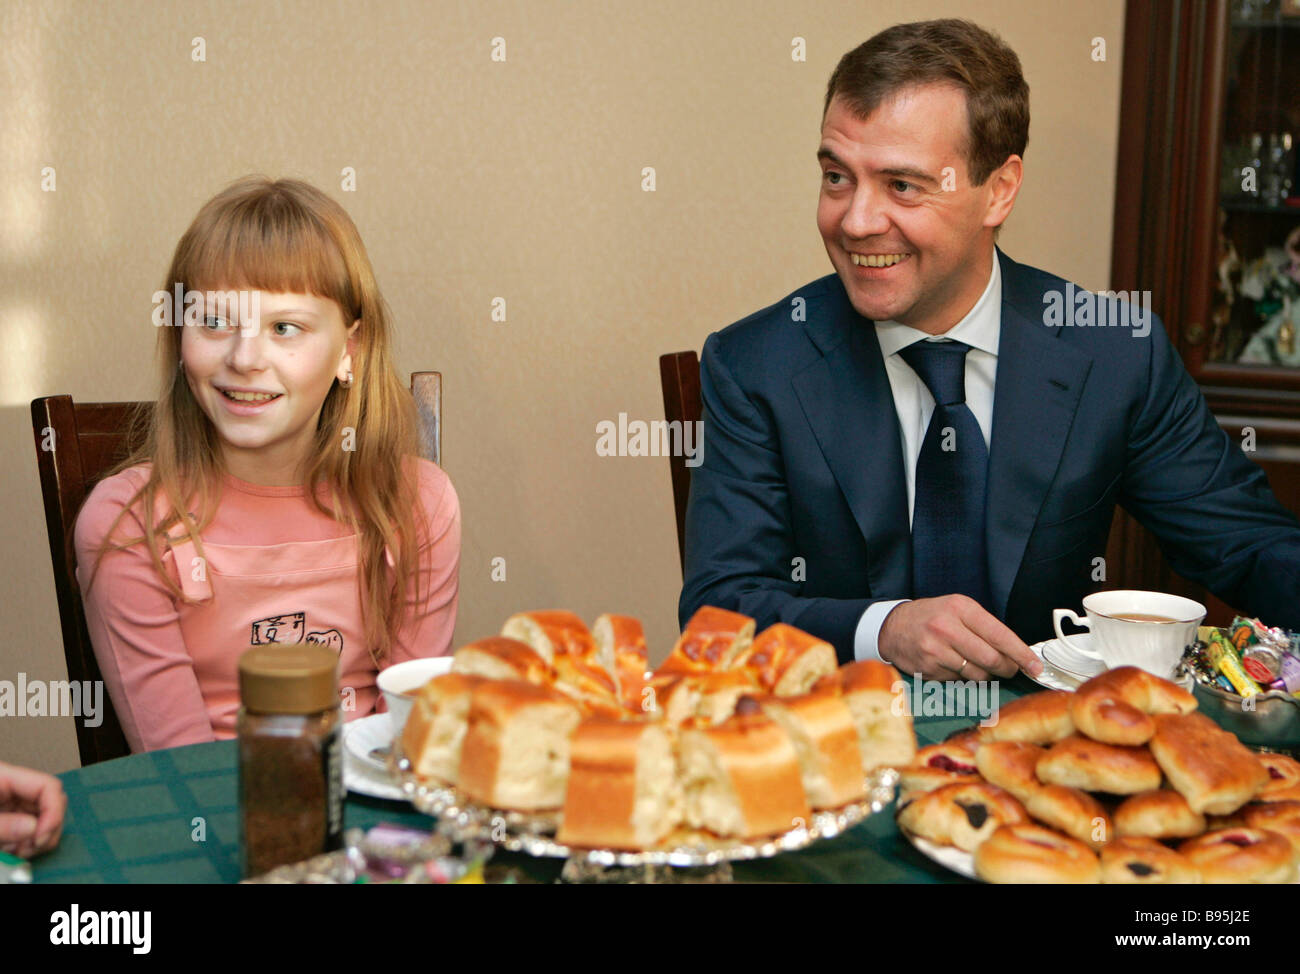 Биография родителей медведева. Дочь Медведева Дмитрия Анатольевича. Медведев с дочкой фото.